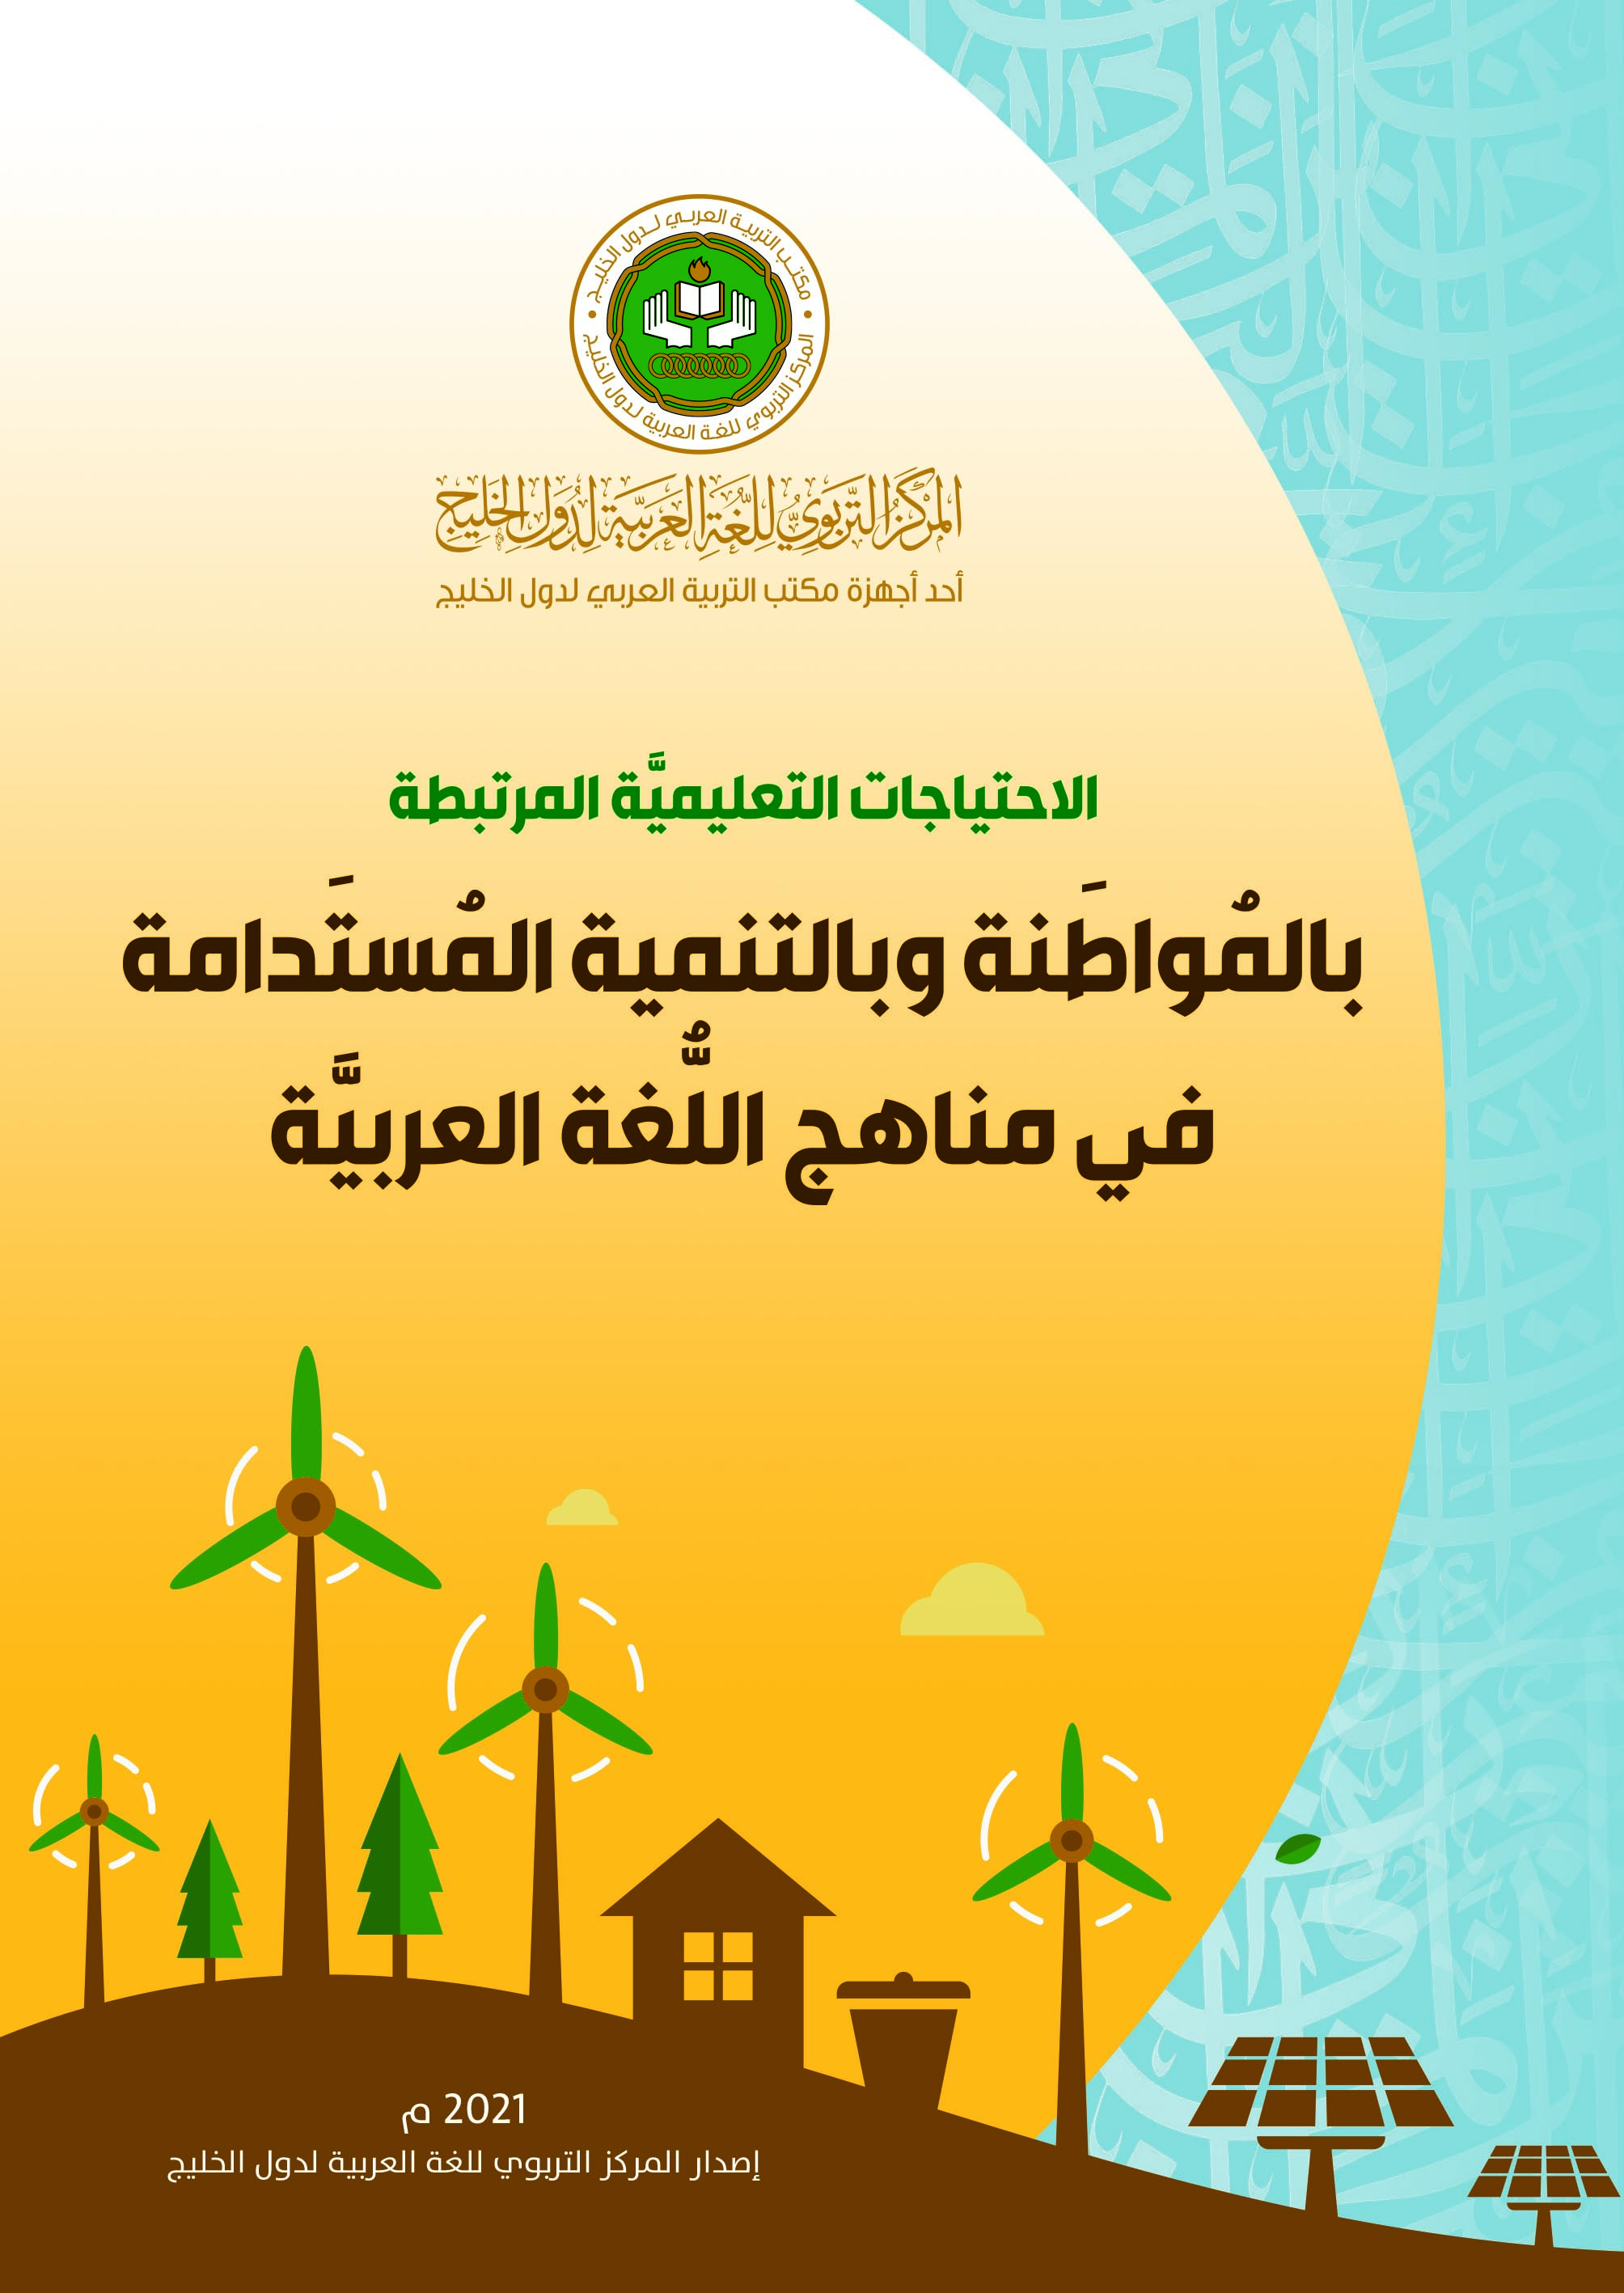  إصدارٌ جديدٌ للمركز التربوي للغة العربية لدول الخليج بالشارقة في الاحتياجات التعليميَّة المرتبطة بالمواطنة وبالتنمية المستدامة في مناهج اللُّغة العرب